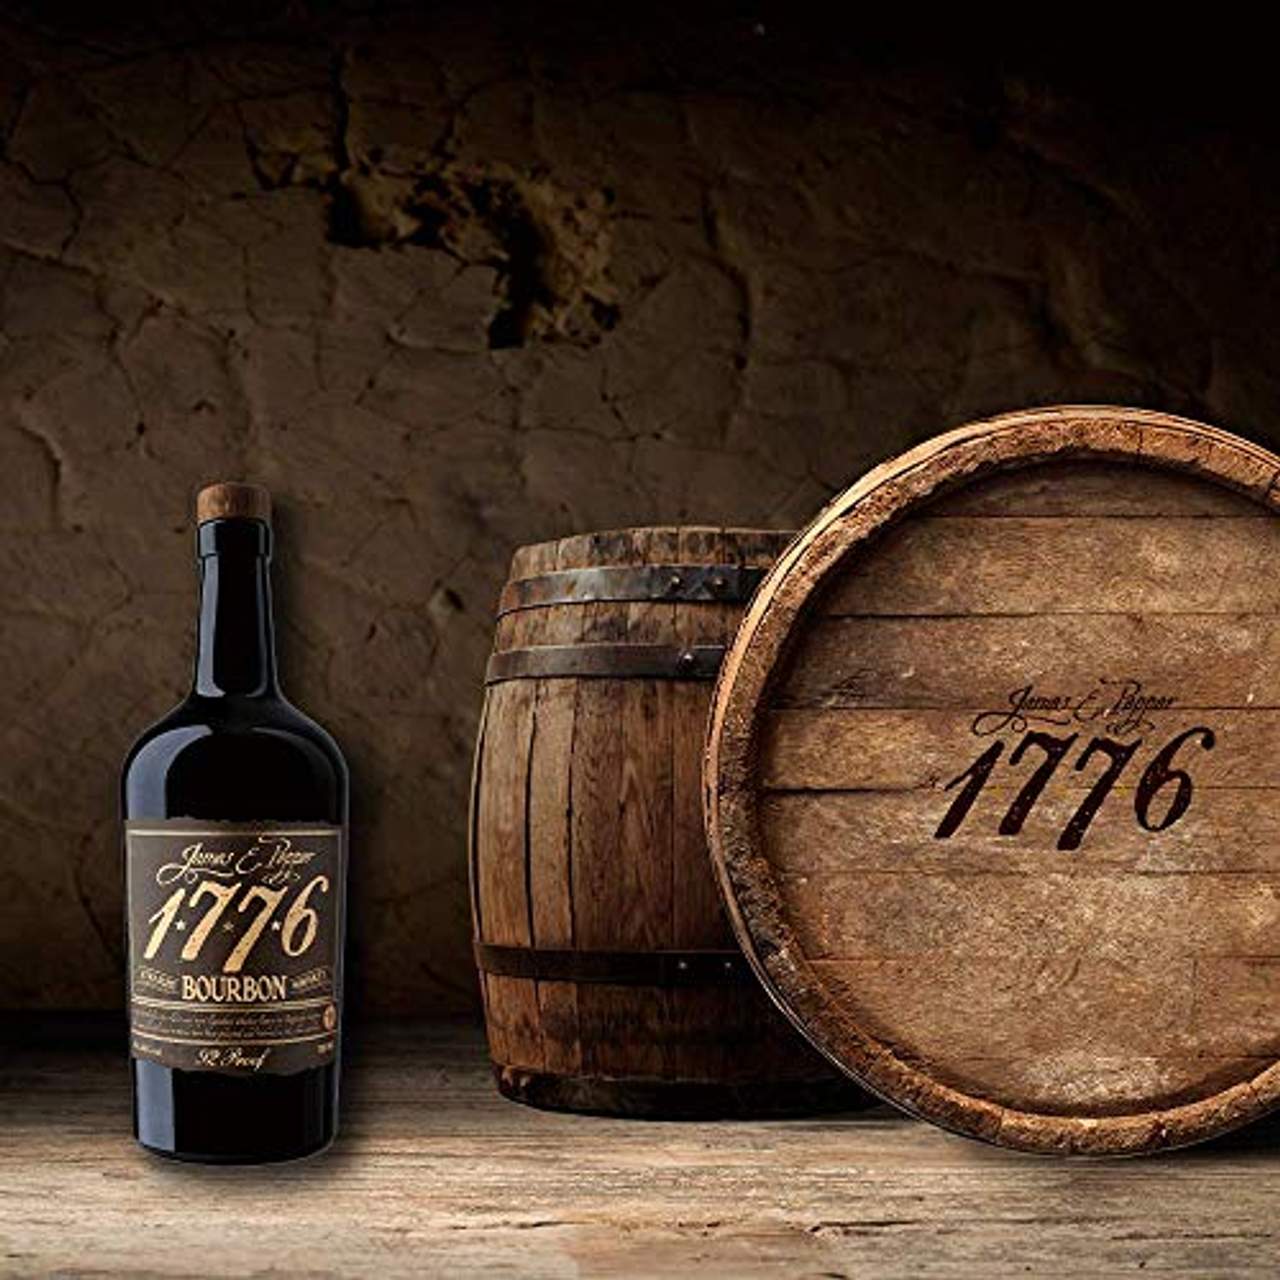 1776 Bourbon Whisky